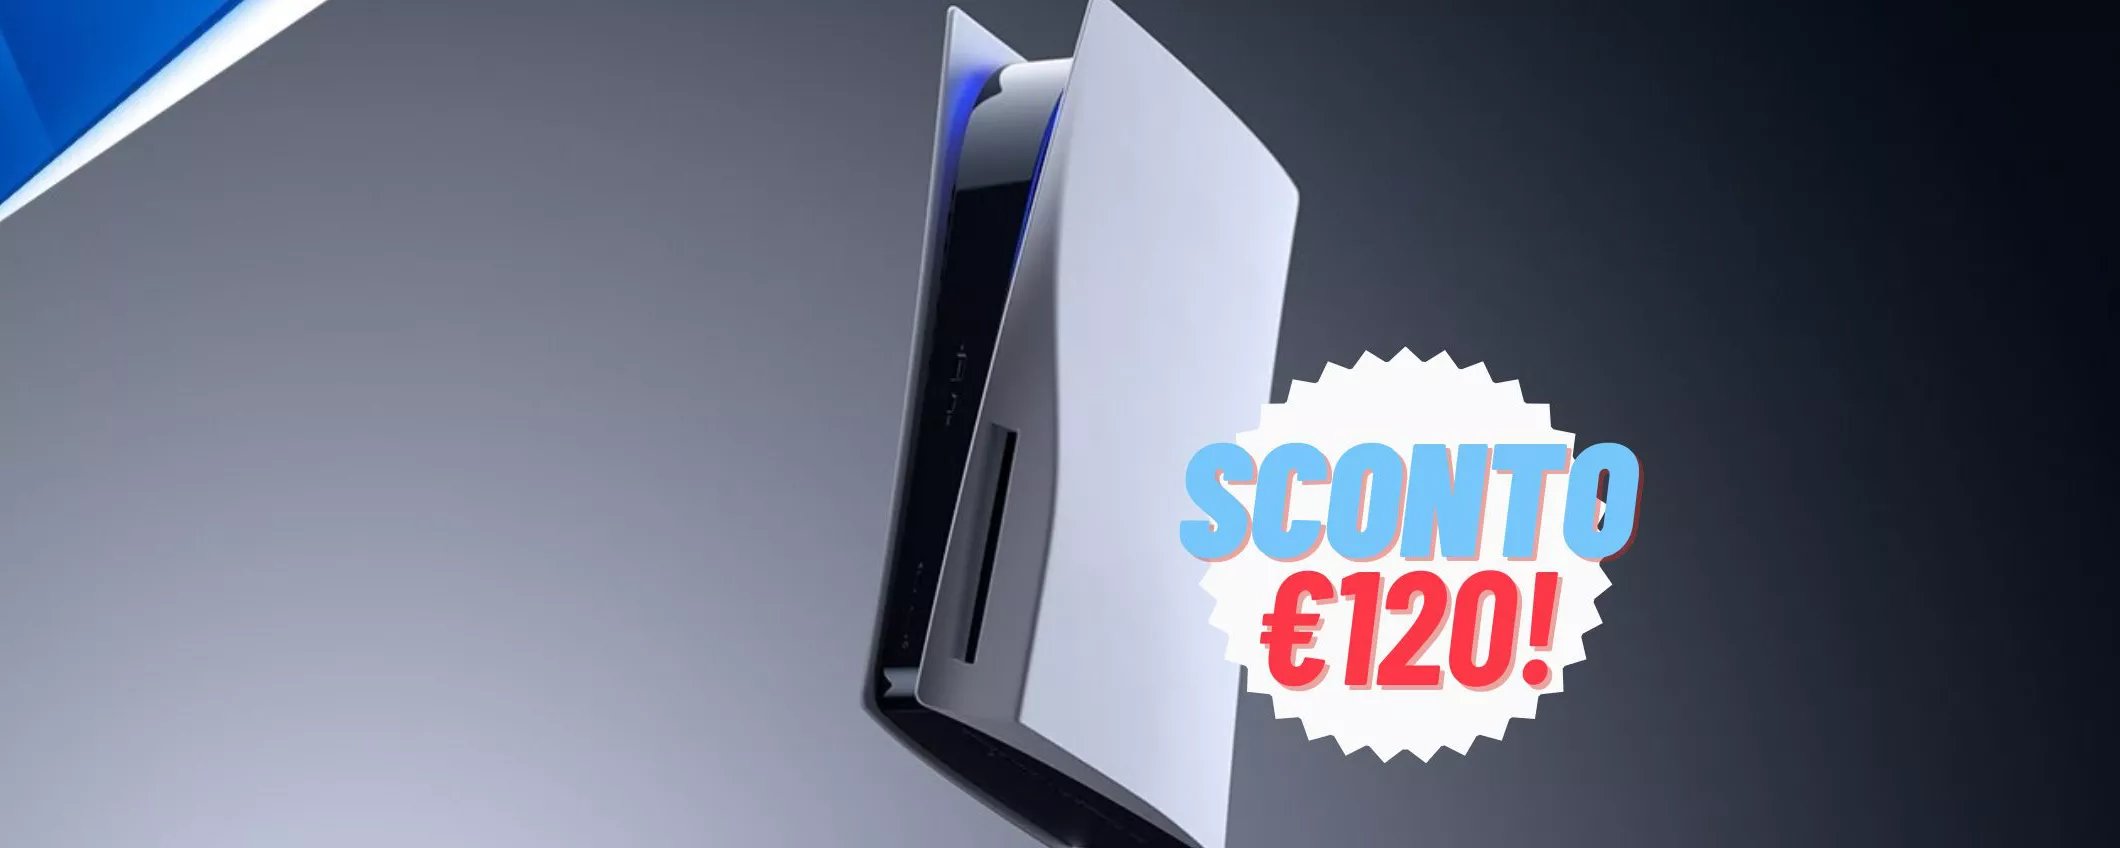 PlayStation 5: RISPARMIA €120 sulla console più amata